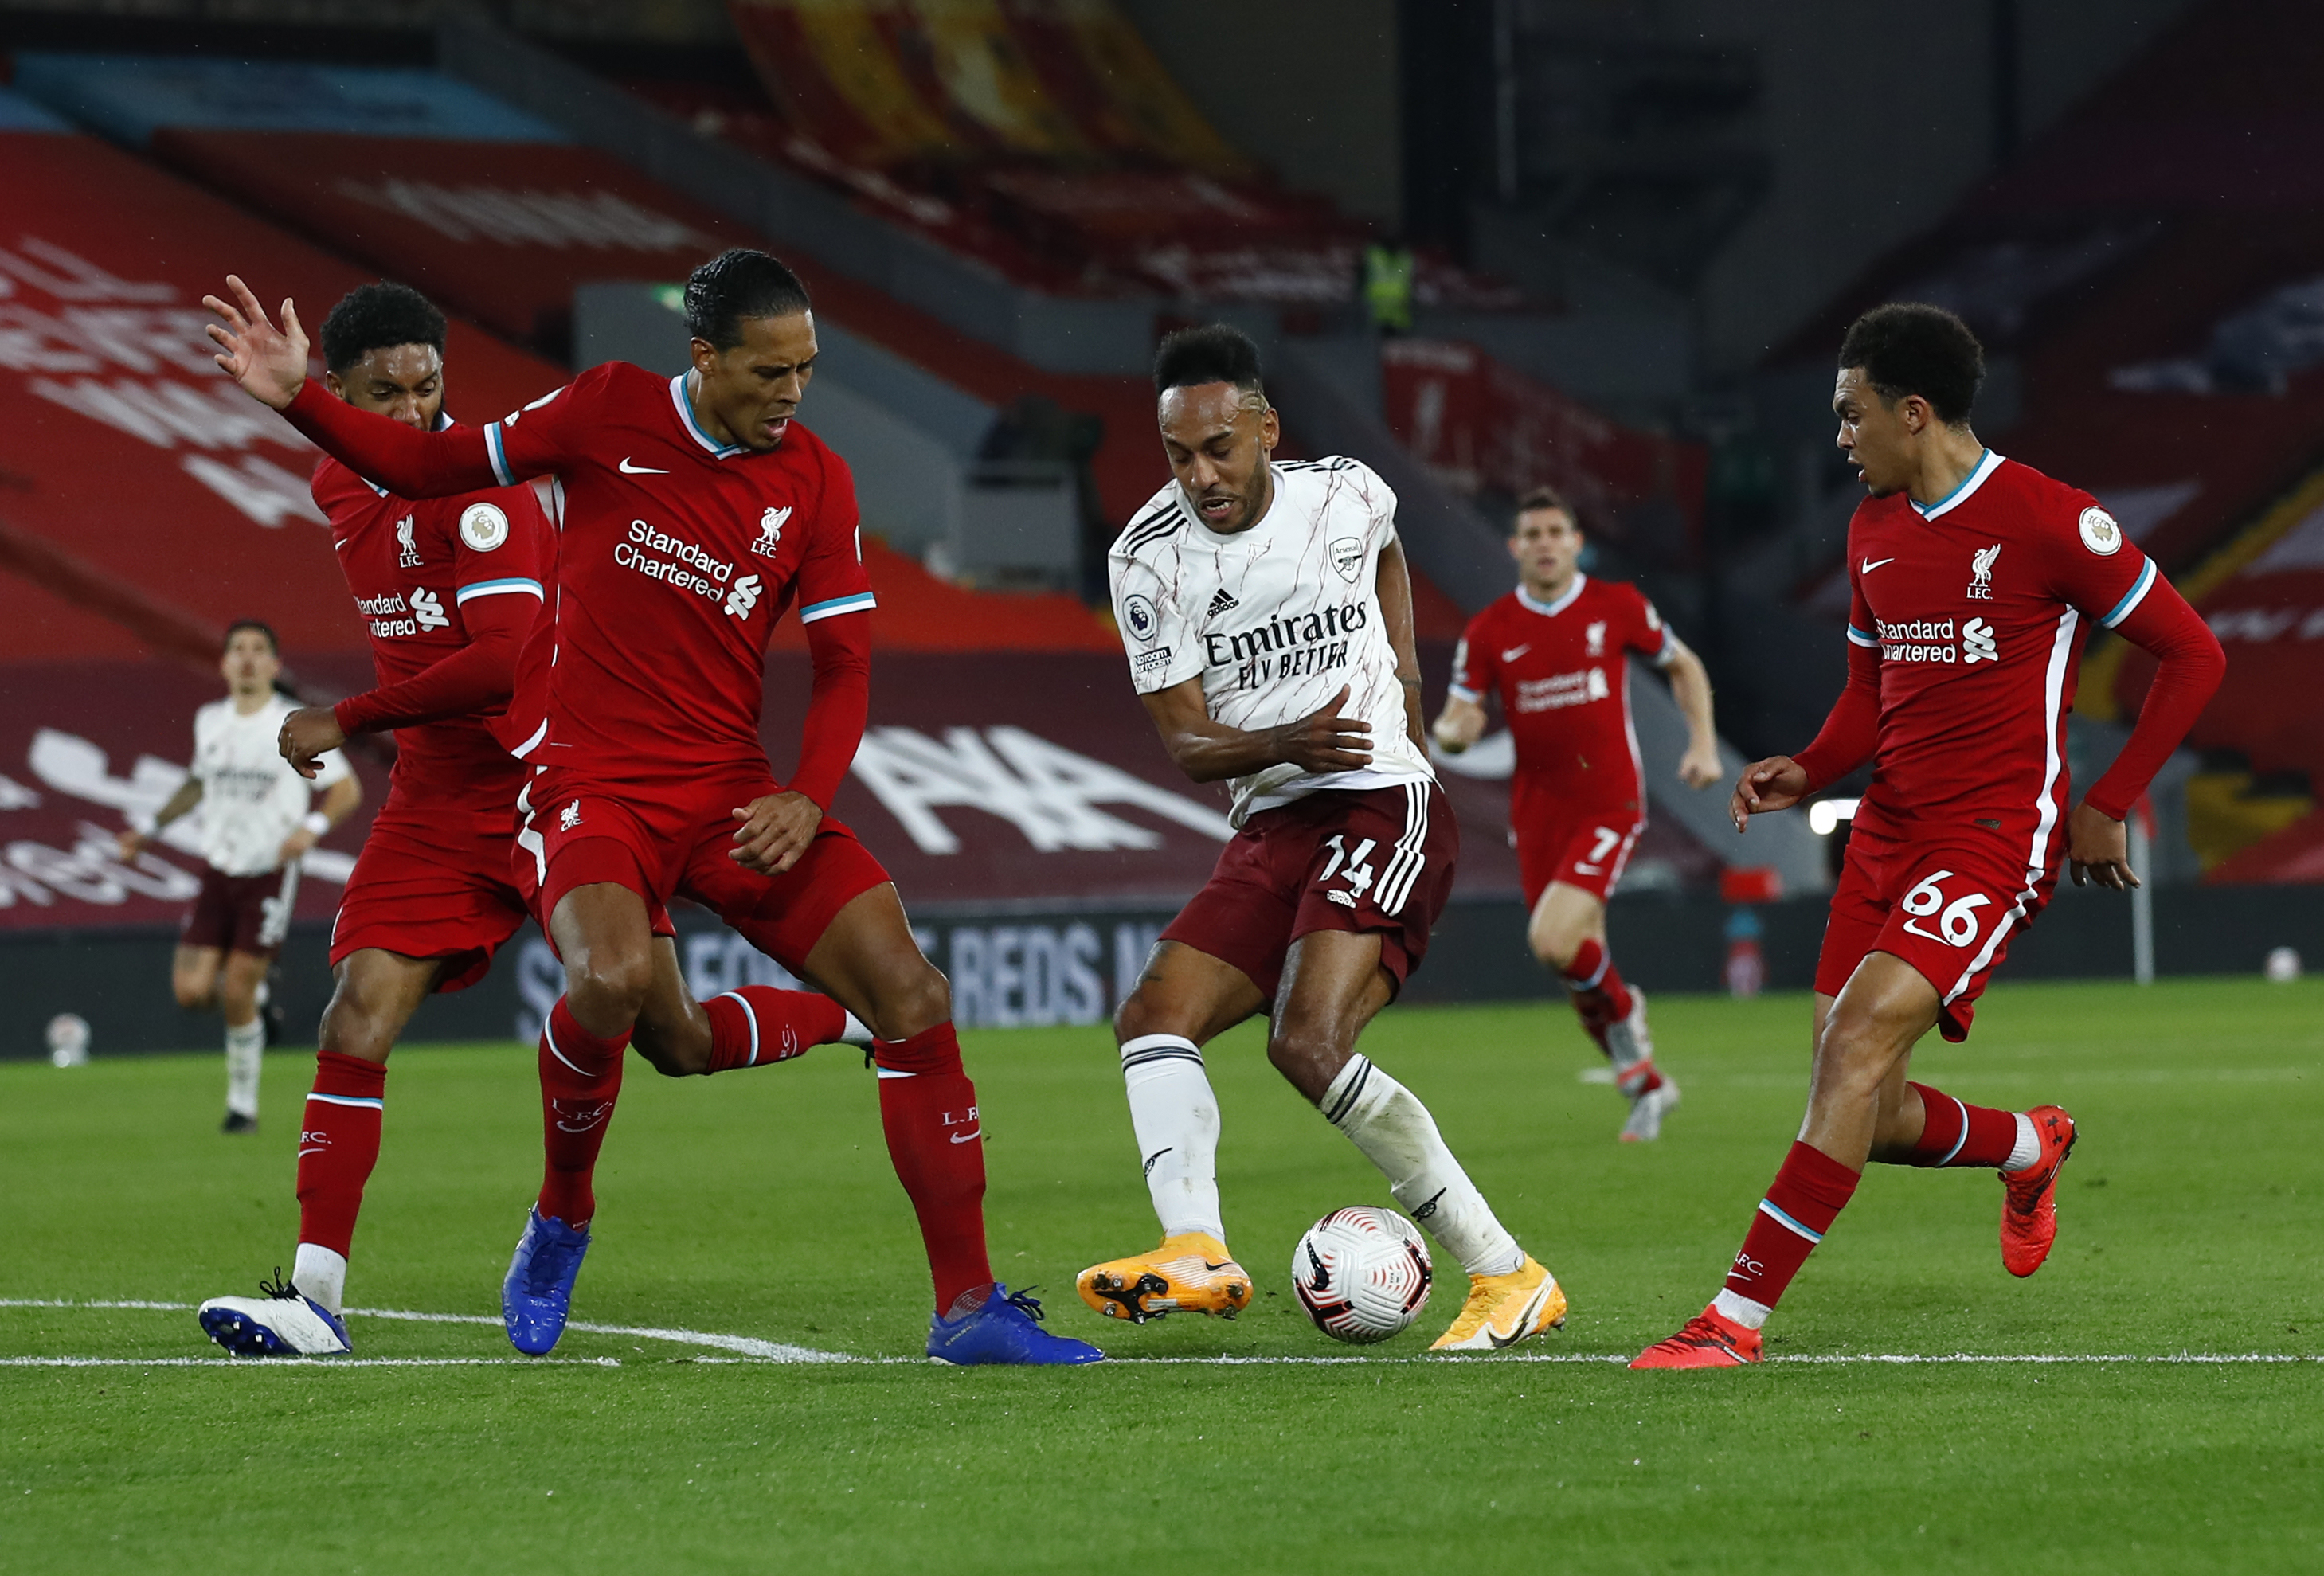 Liverpool - Arsenal 0-0, ACUM, pe Digi Sport 2. Meci tare în Cupa Ligii Angliei